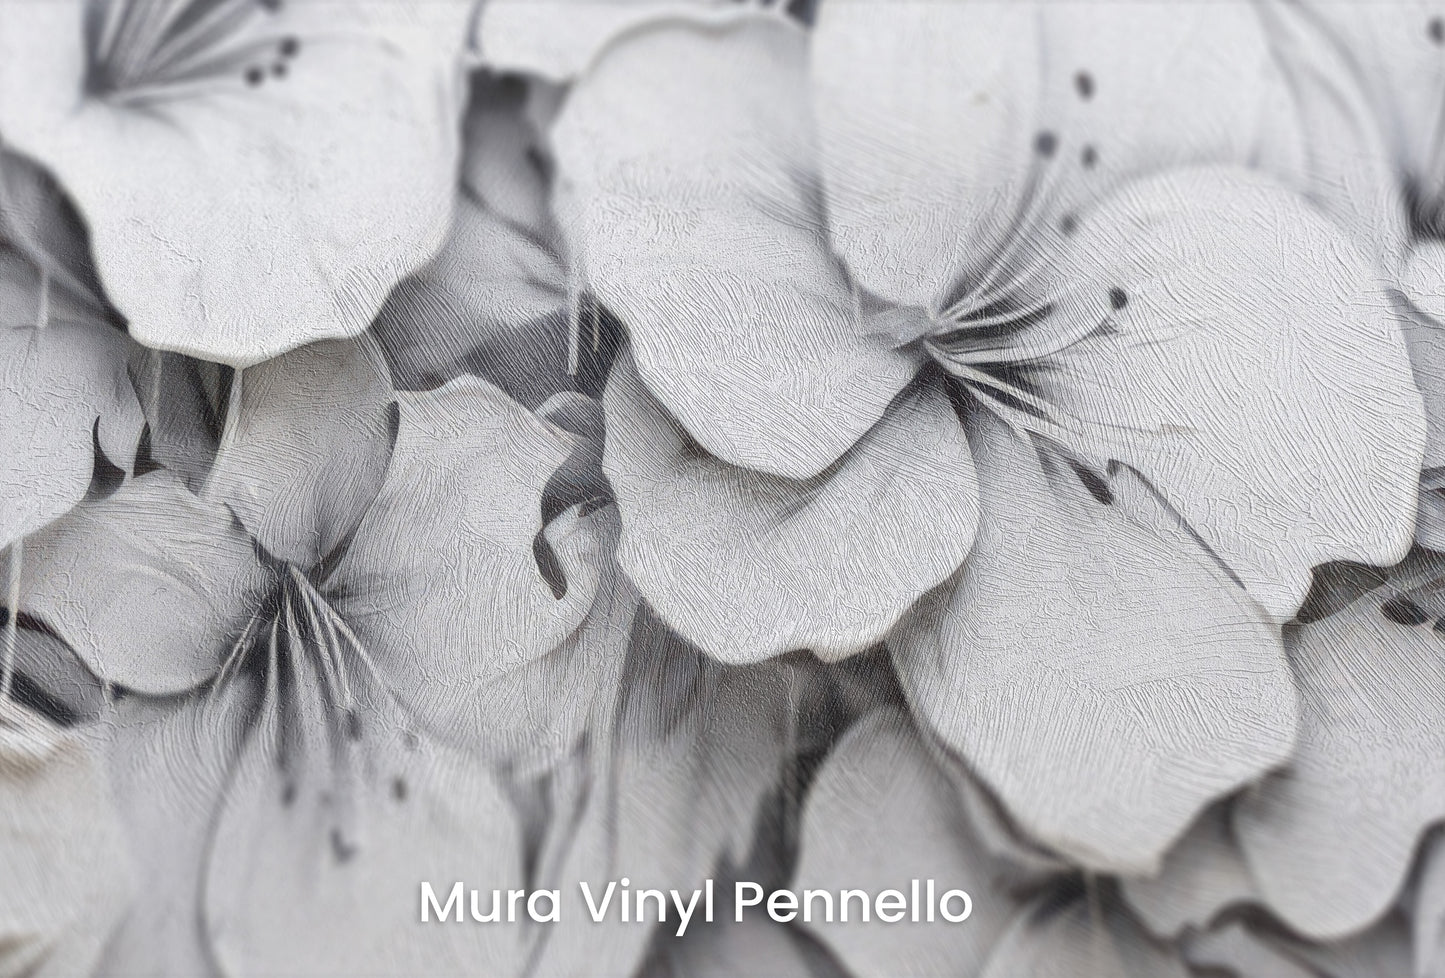 Zbliżenie na artystyczną fototapetę o nazwie CASCADE OF WHITES na podłożu Mura Vinyl Pennello - faktura pociągnięć pędzla malarskiego.